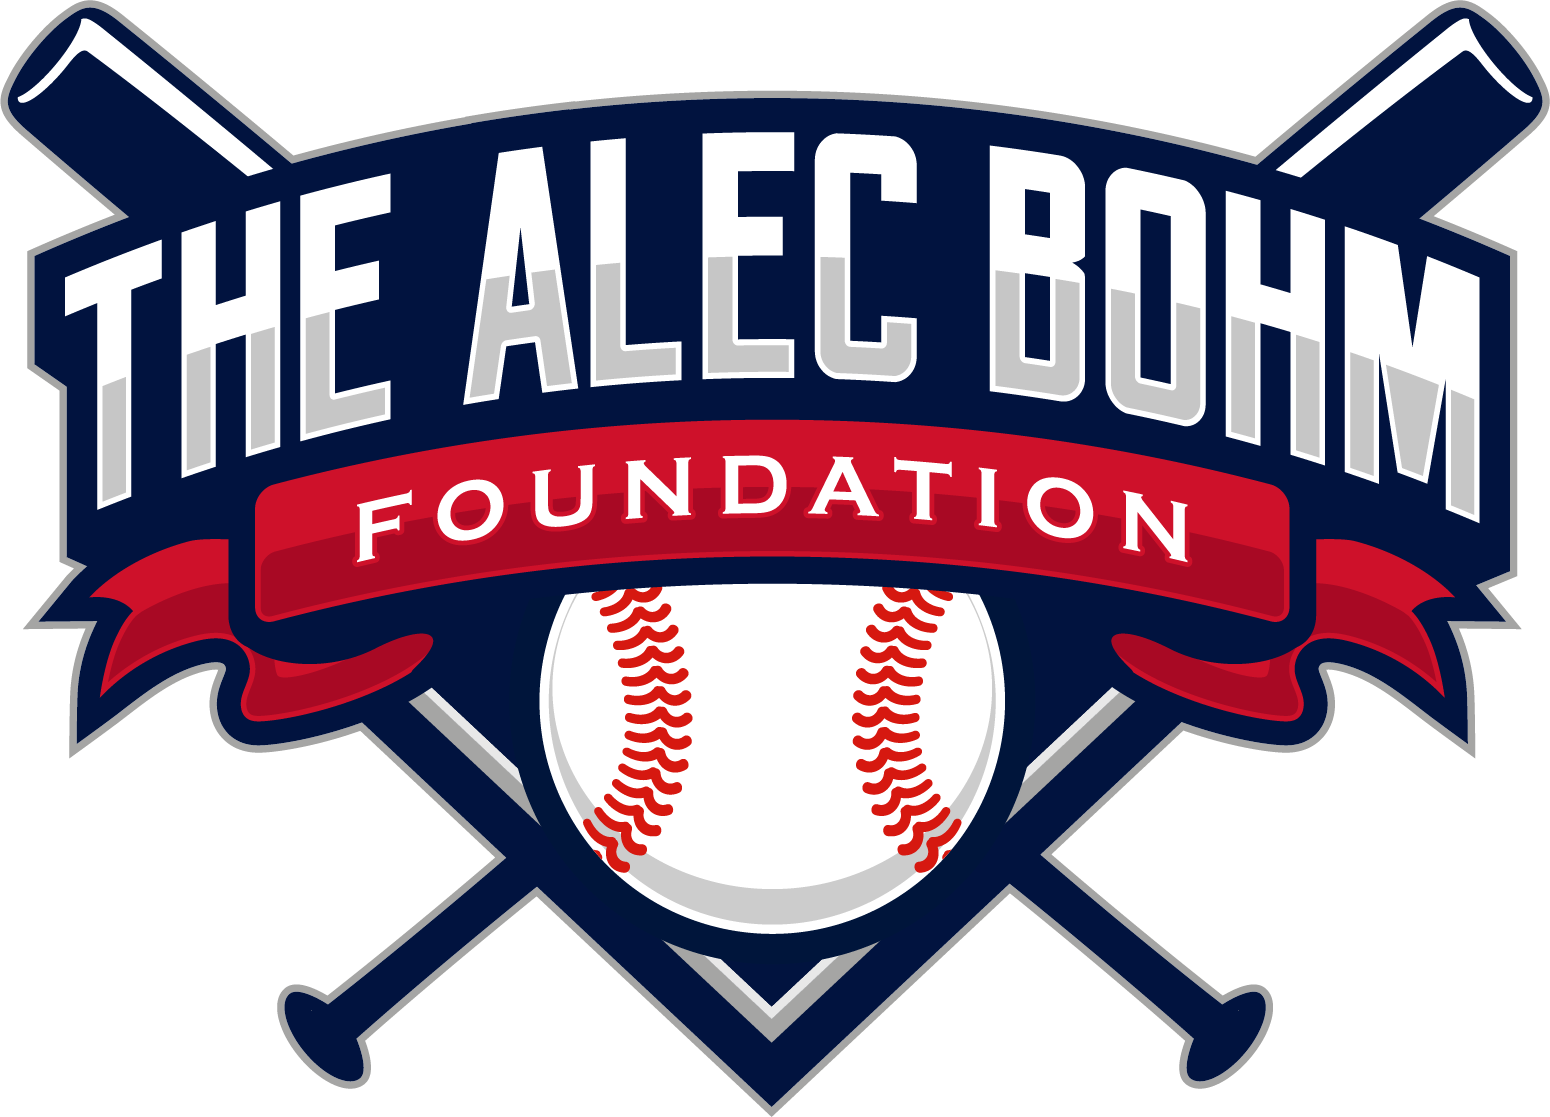 About Alec — The Alec Bohm Foundation